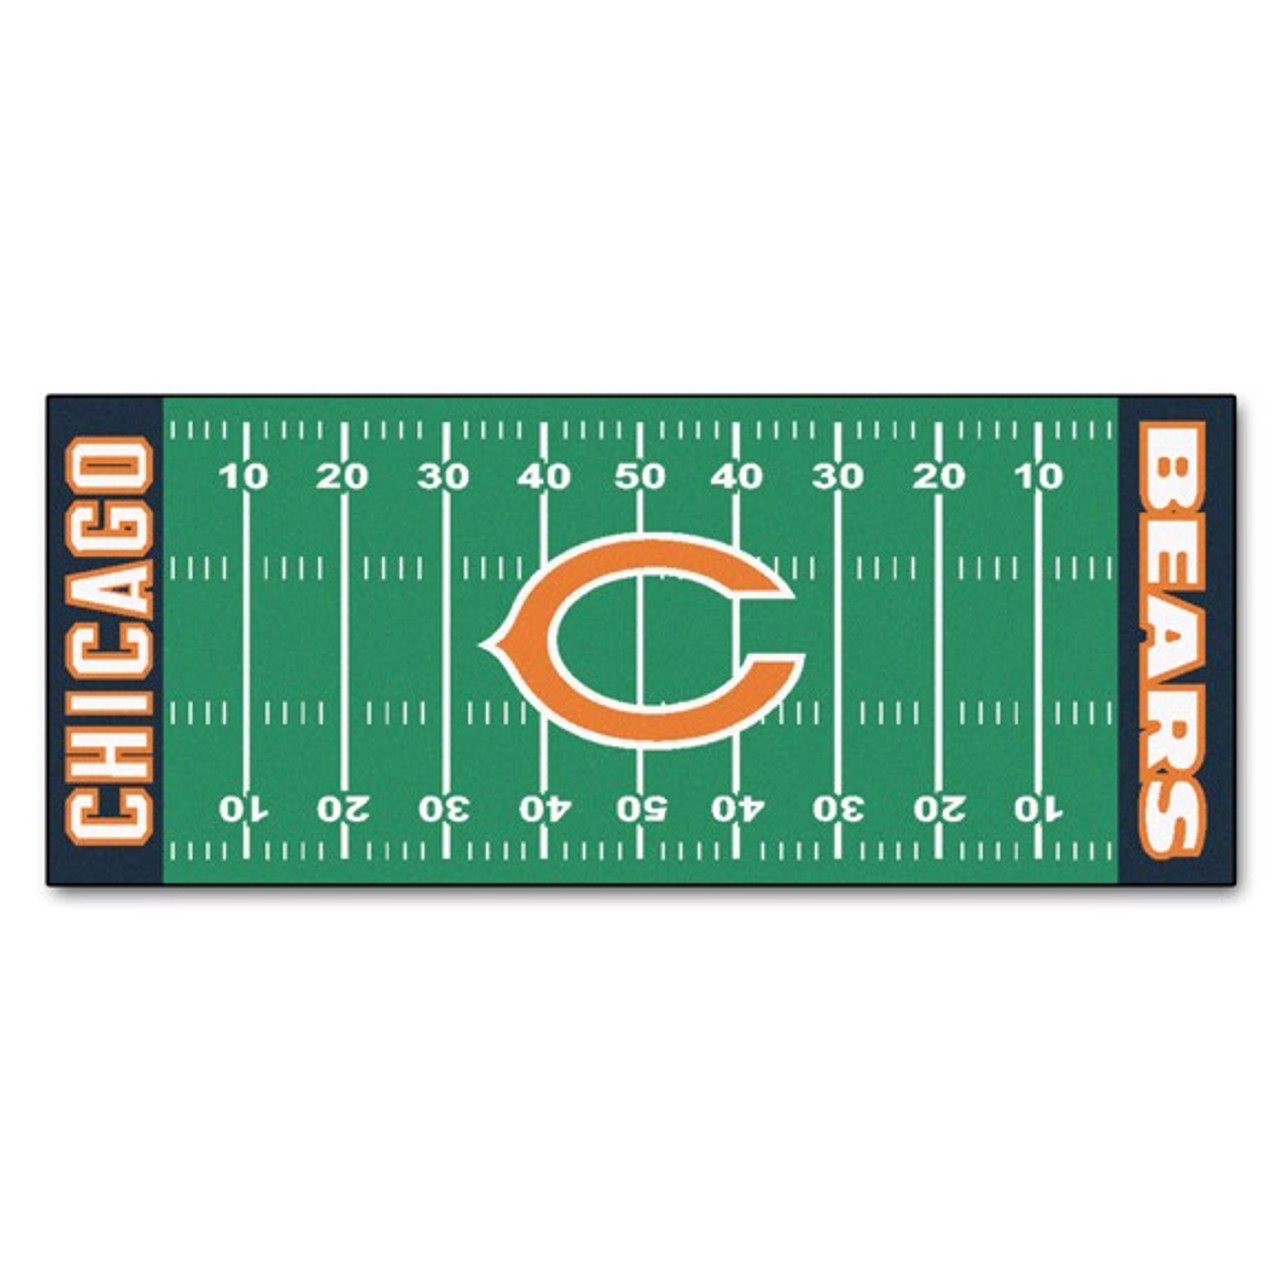 Chicago Bears Football - SportsRec